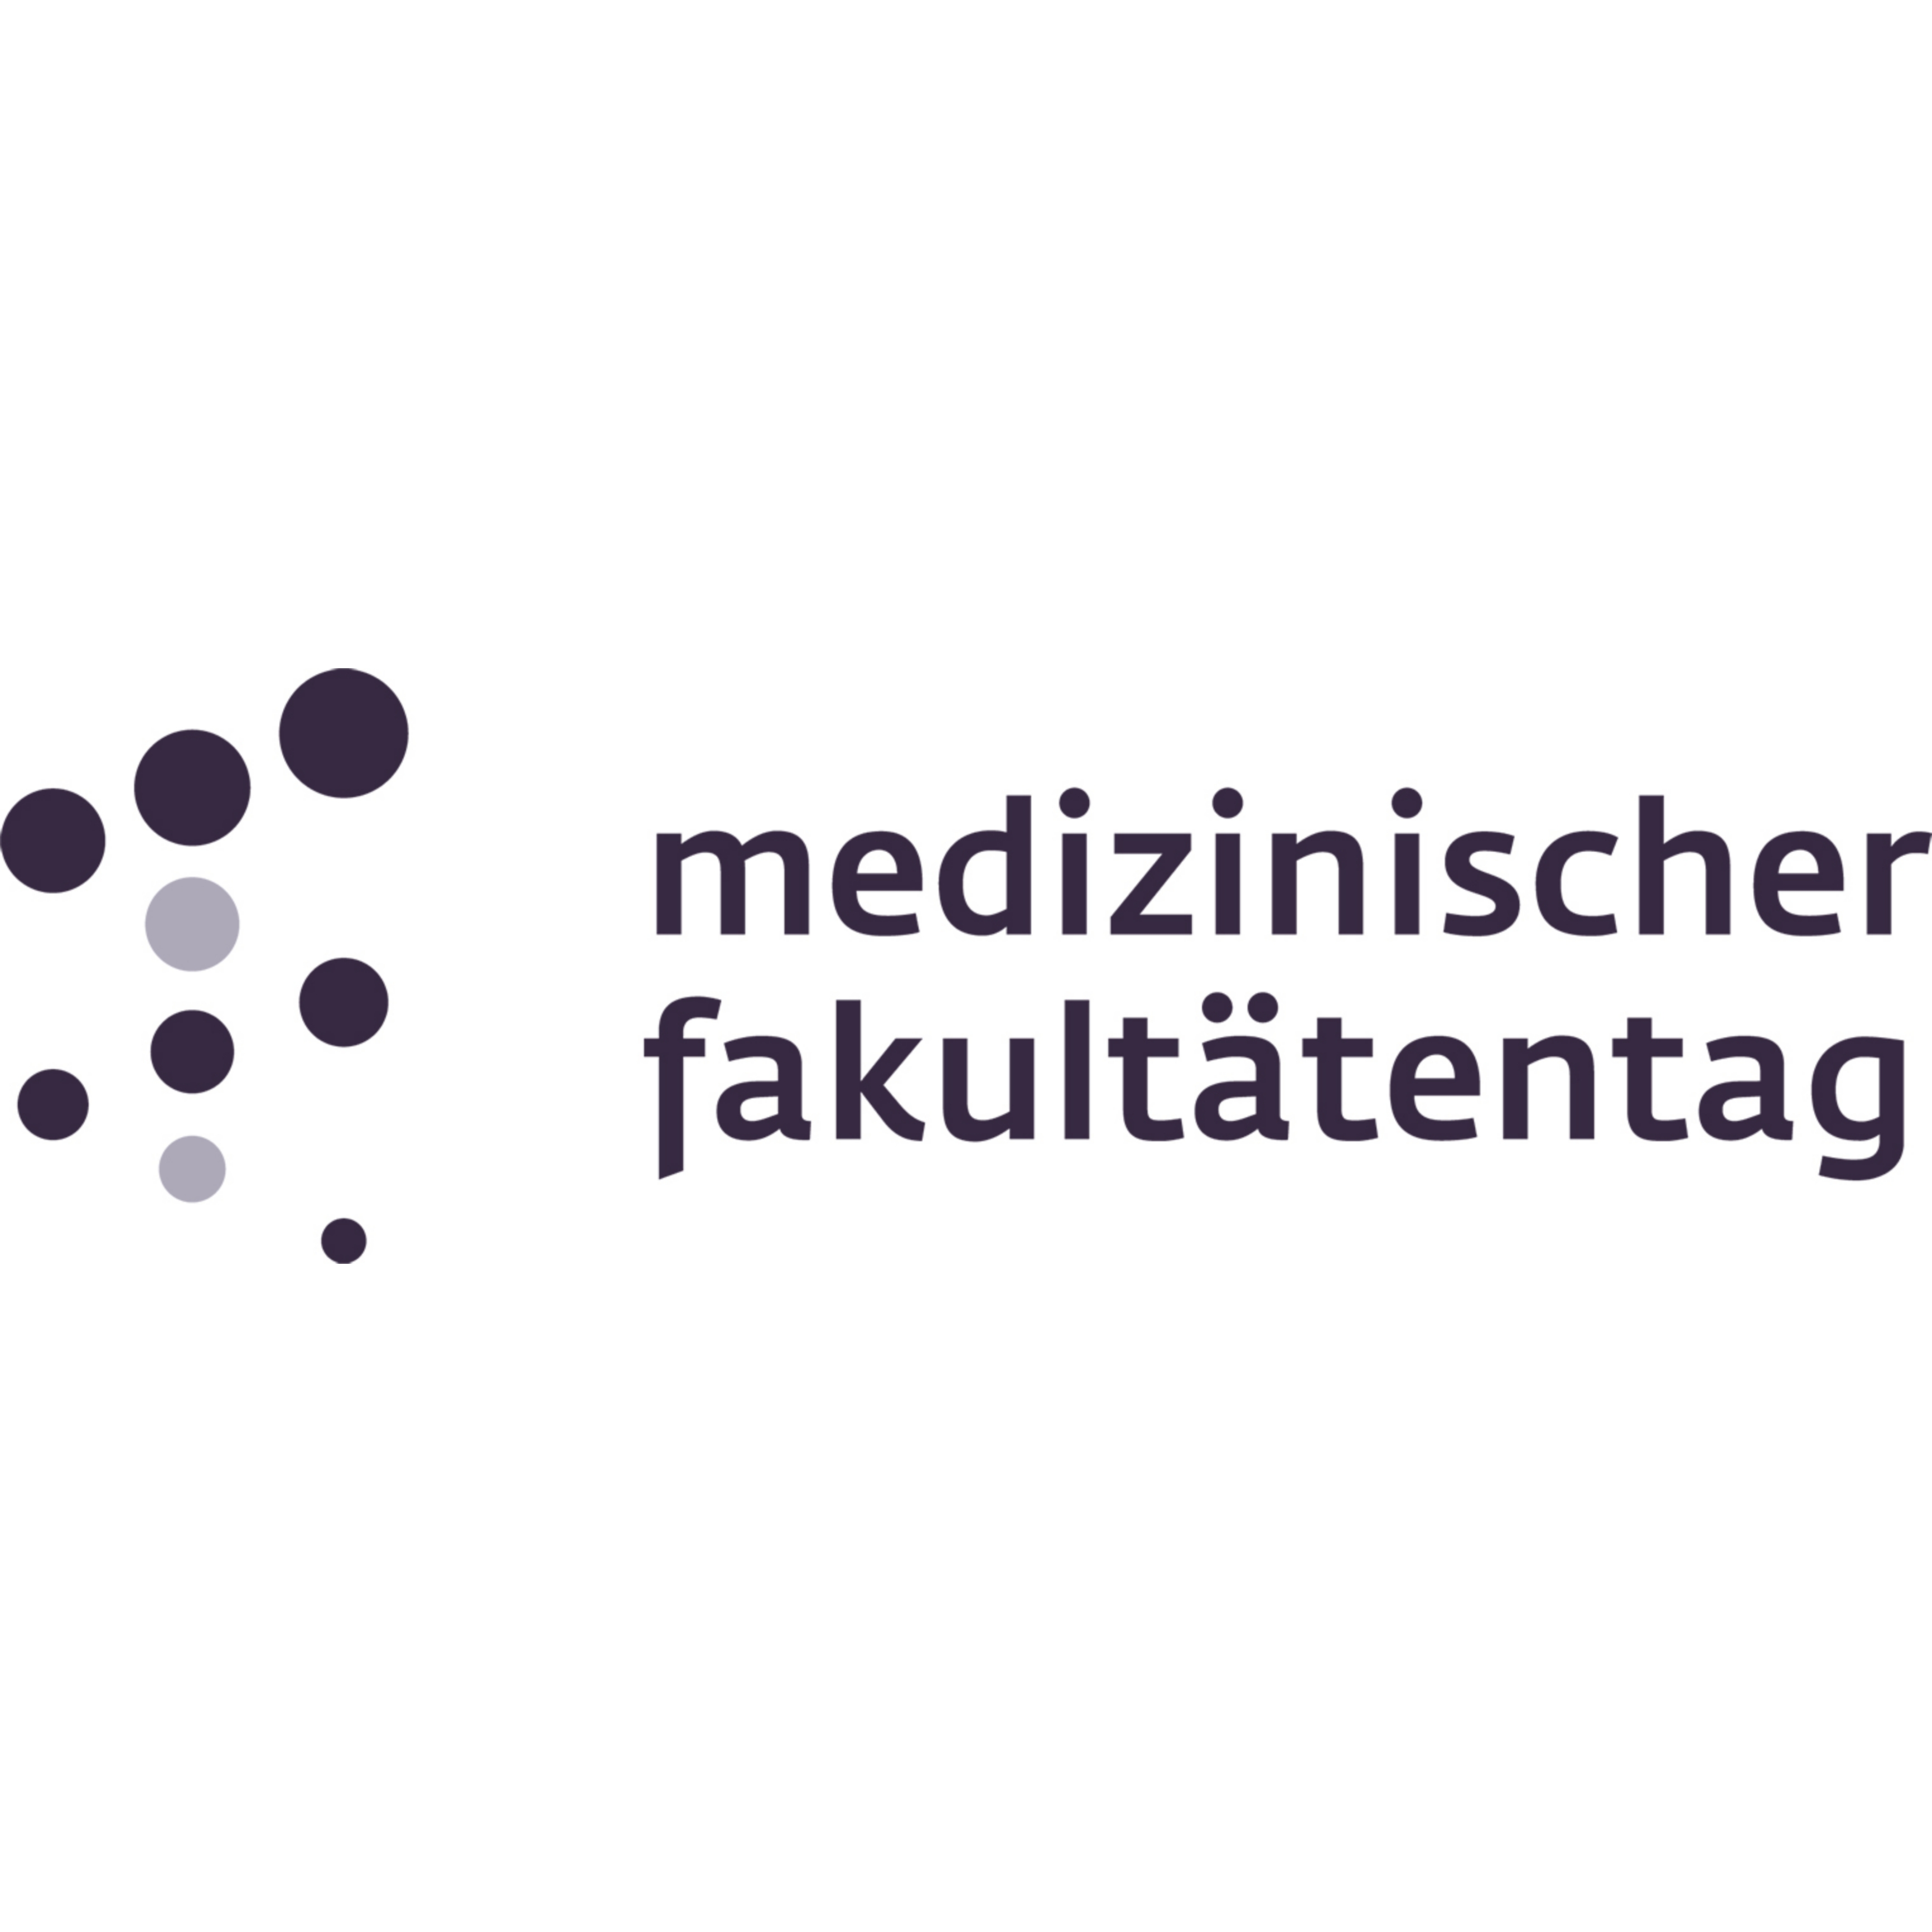 Zu sehen ist das Logo des Medizinischen Fakultätentags. Es handelt sich um eine Wort-Bild-Marke.